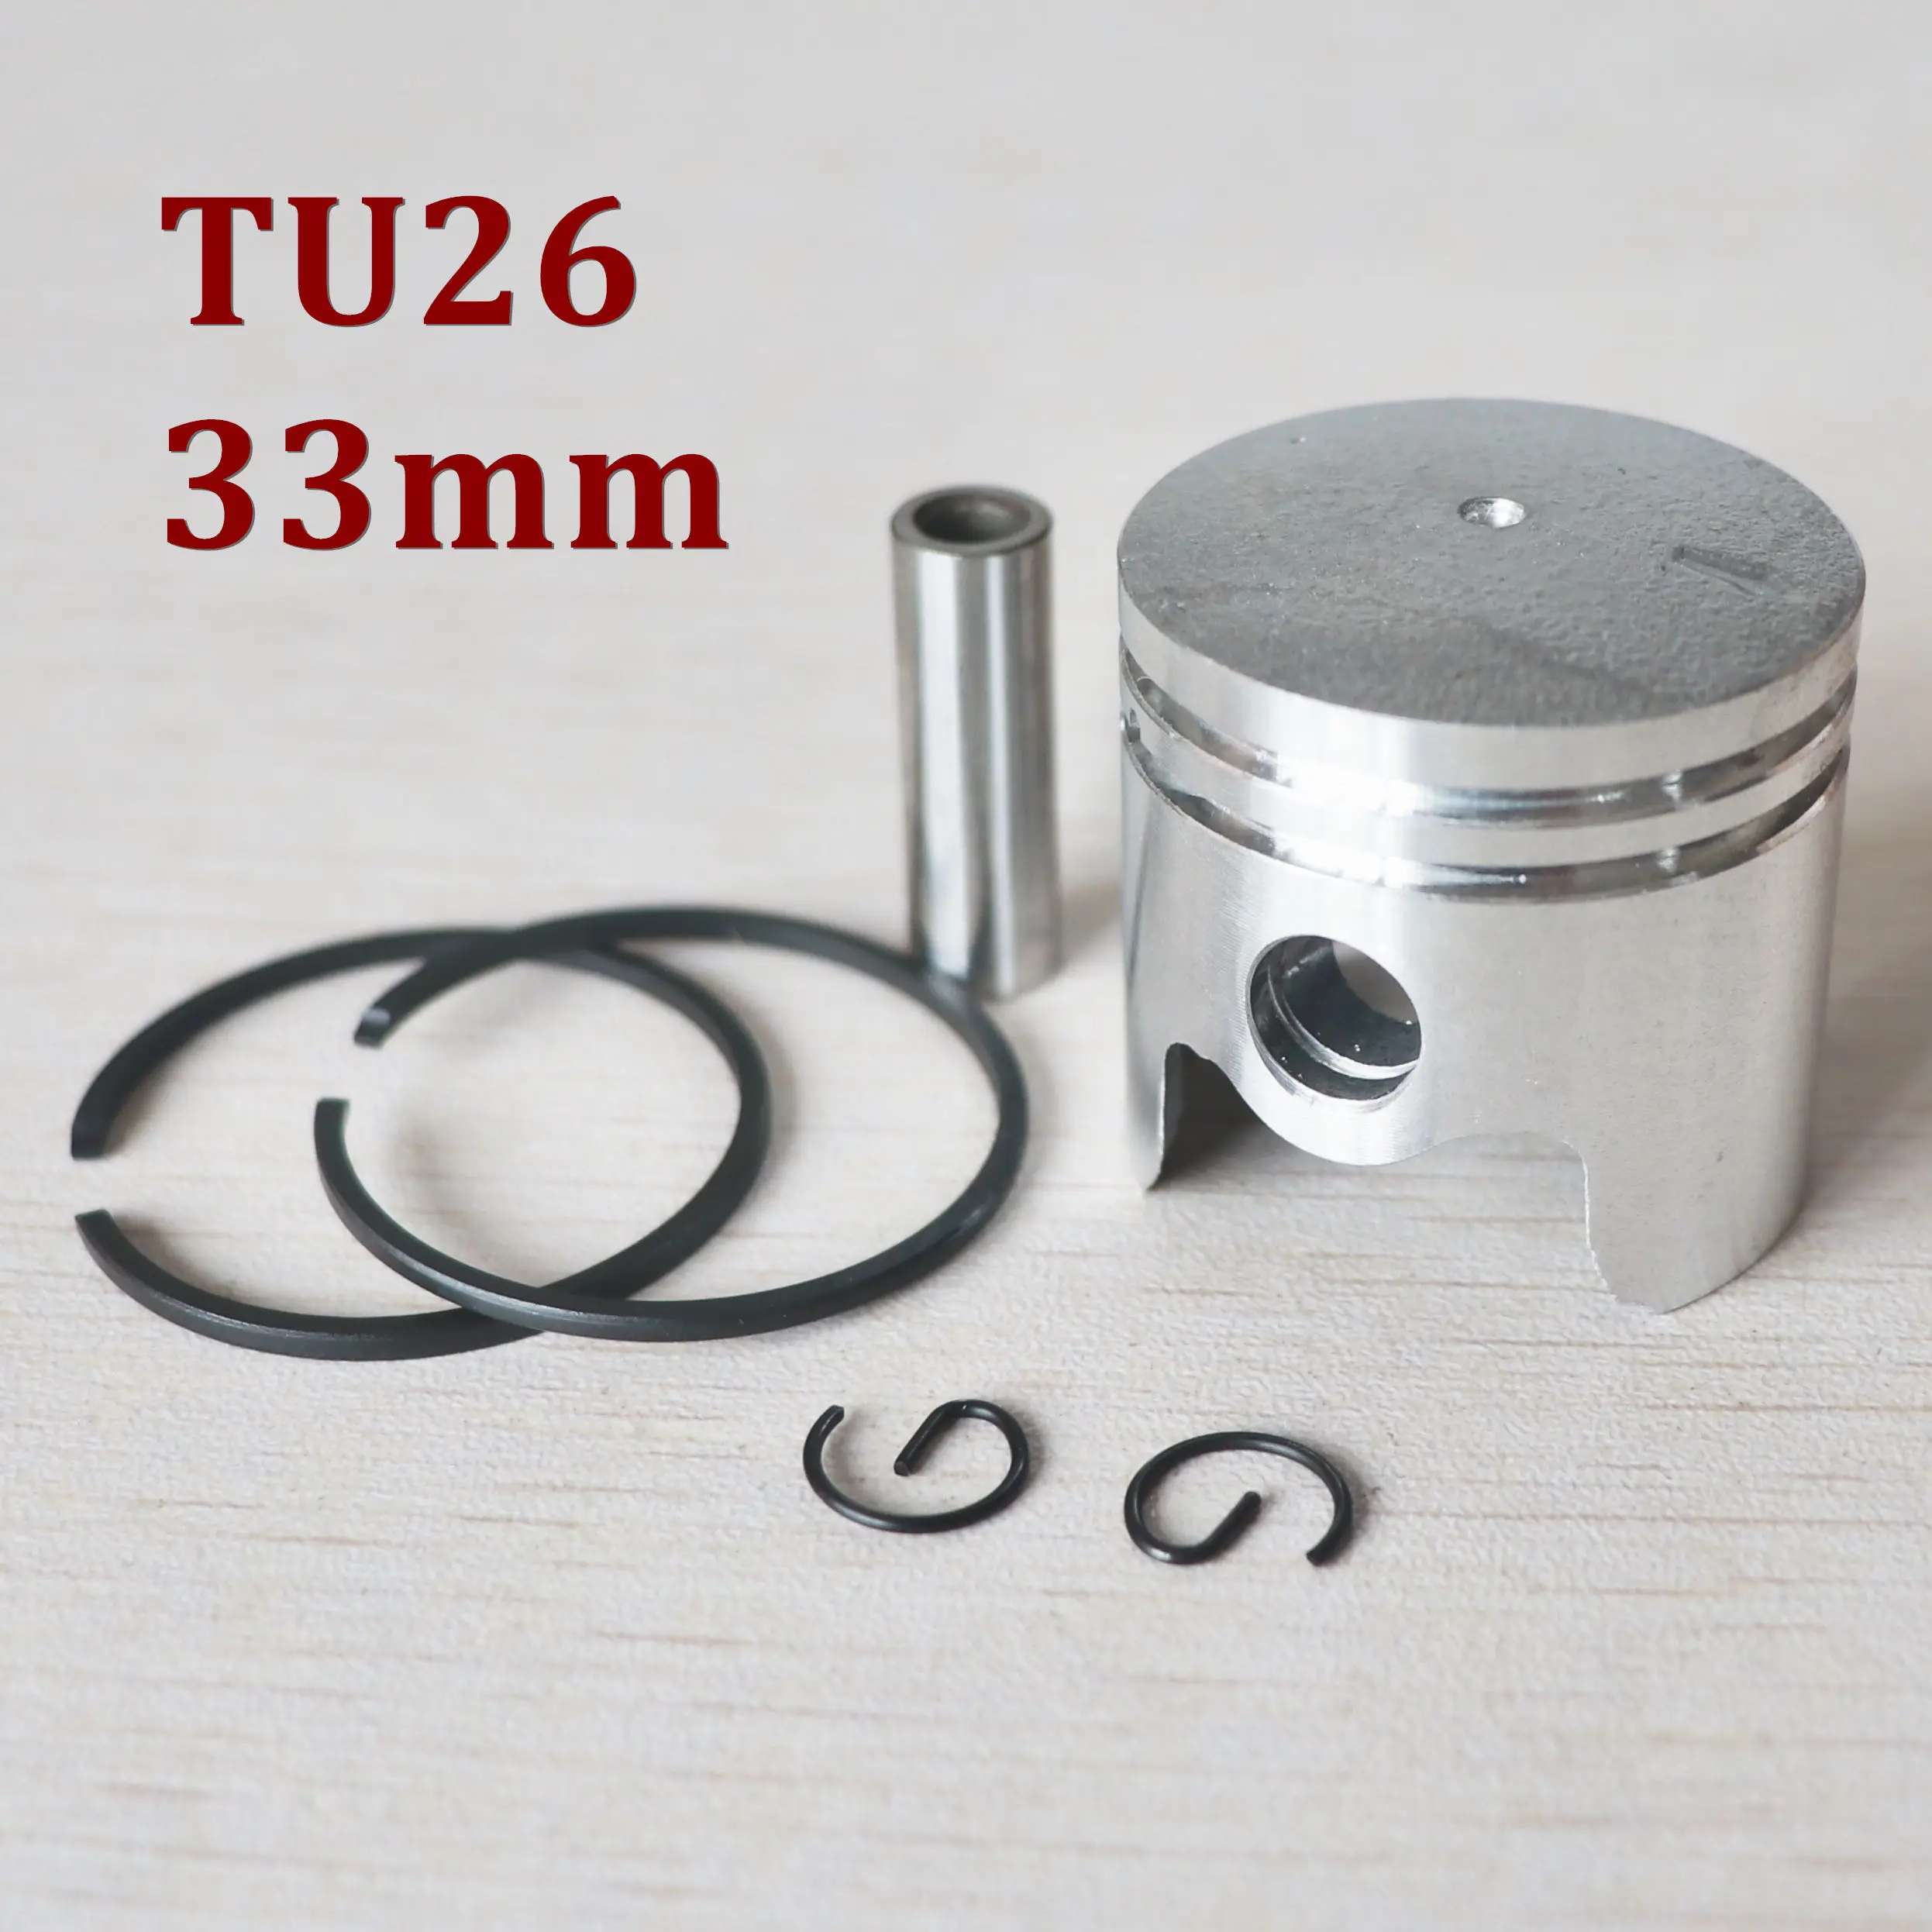 Фото Детали для распылителя TU26 набор триммеров и поршней|brush cutter|parts - купить